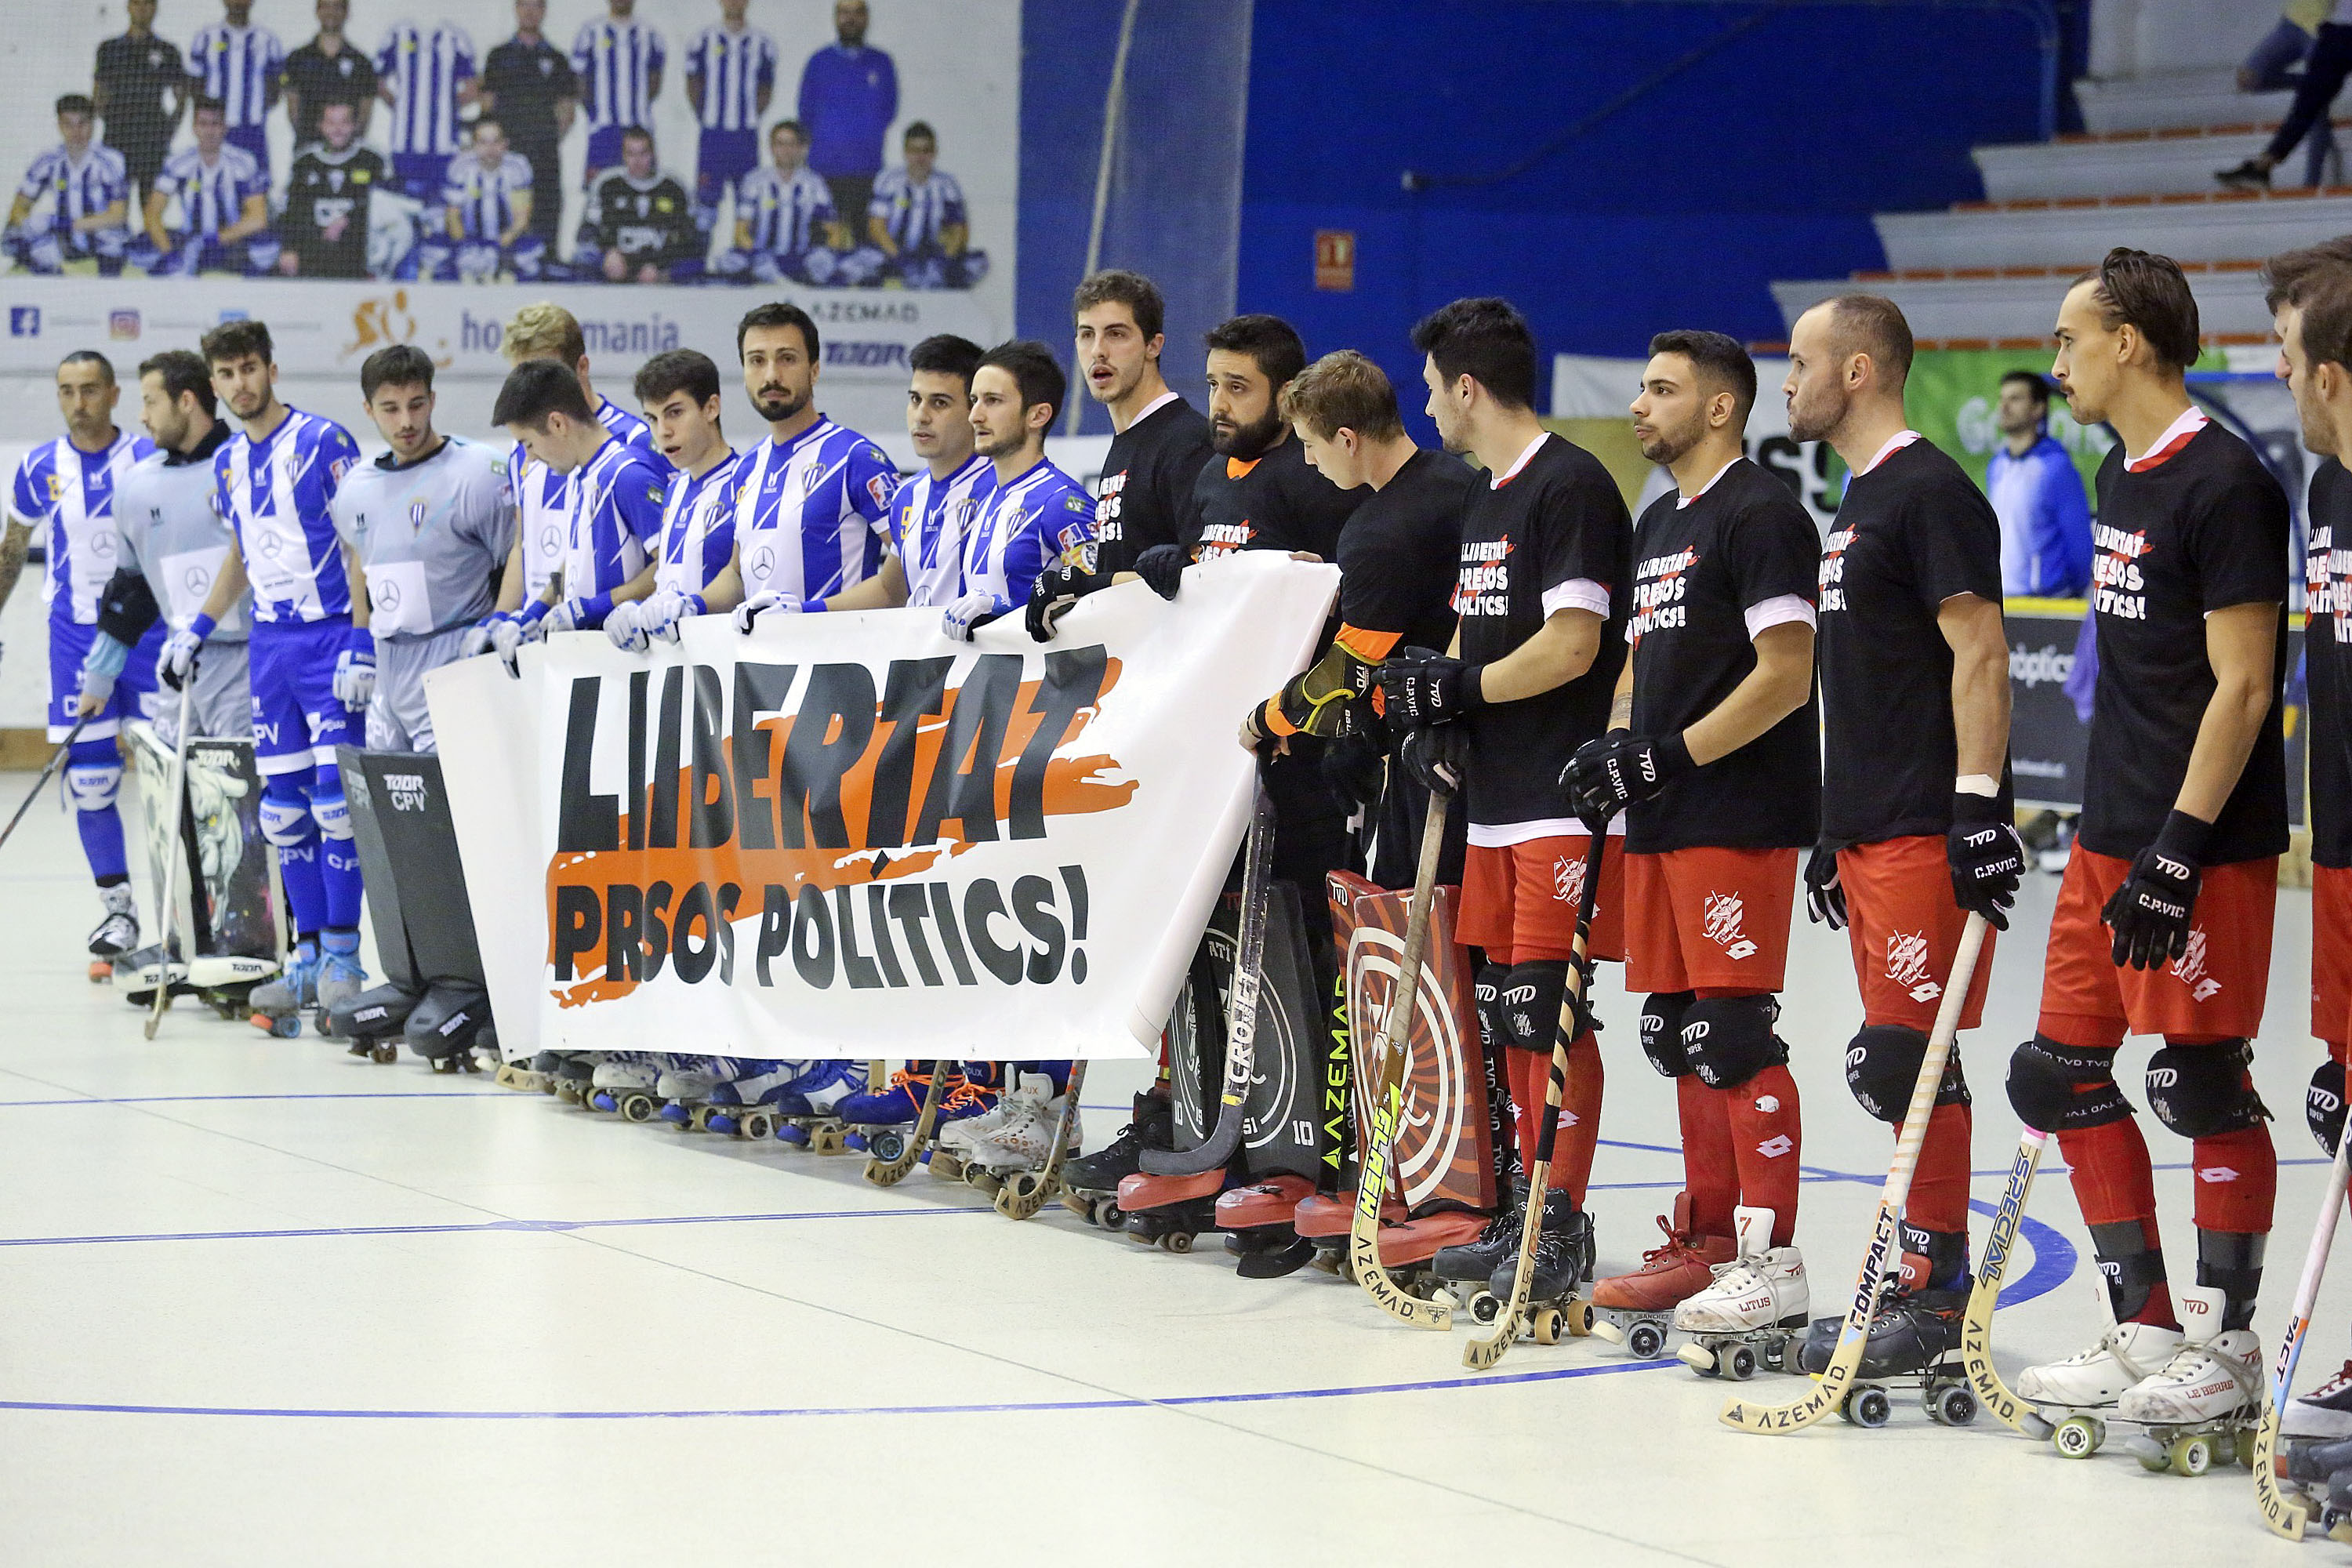 Els jugadors dels dos equips van desplegar la pancarta que demana la llibertat dels presos polítics